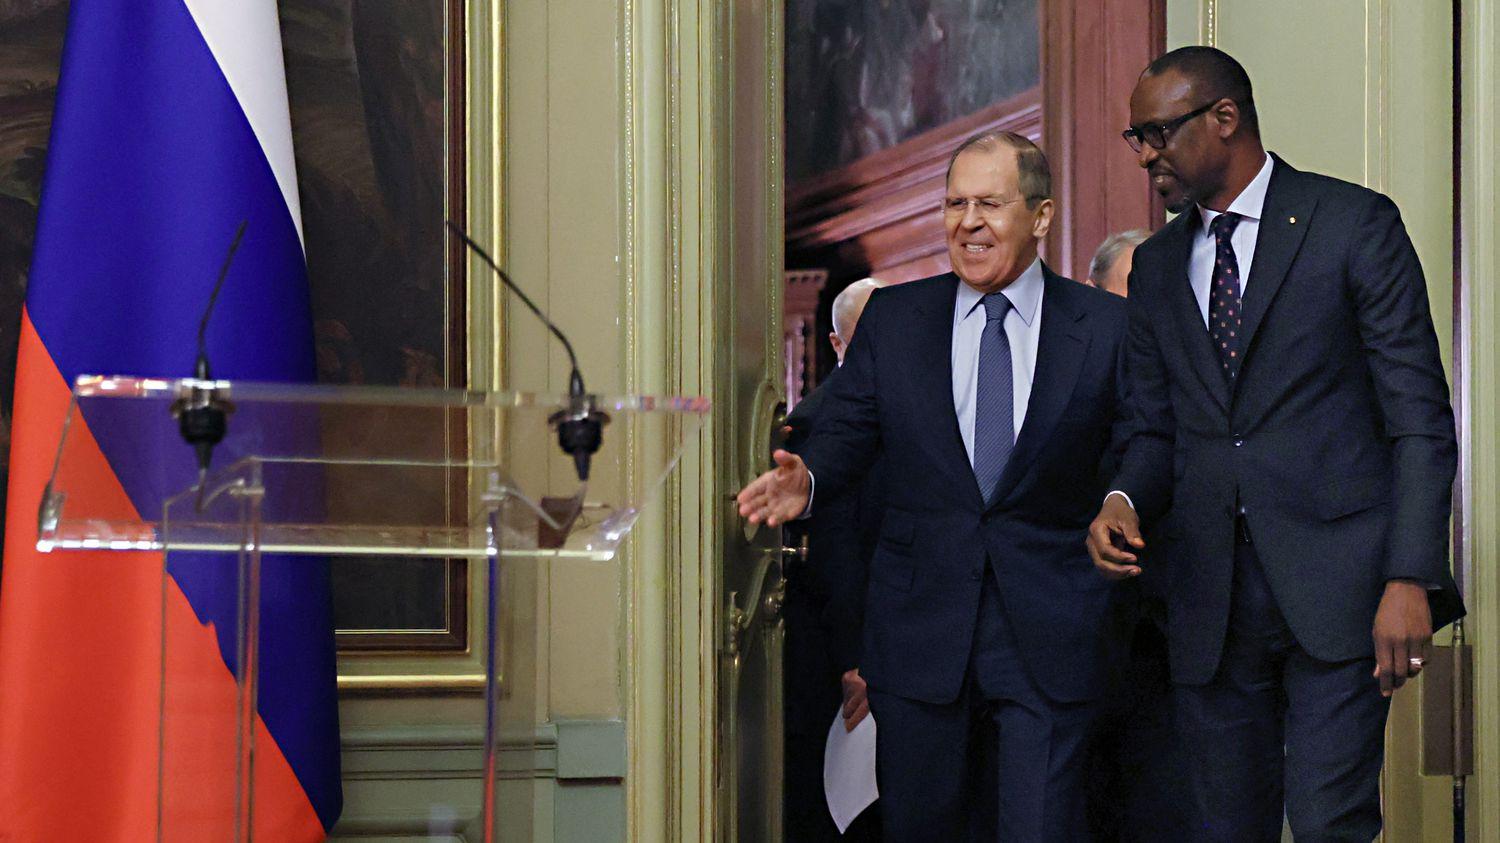 Le ministre russe Sergueï Lavrov attendu dans ces pays africains